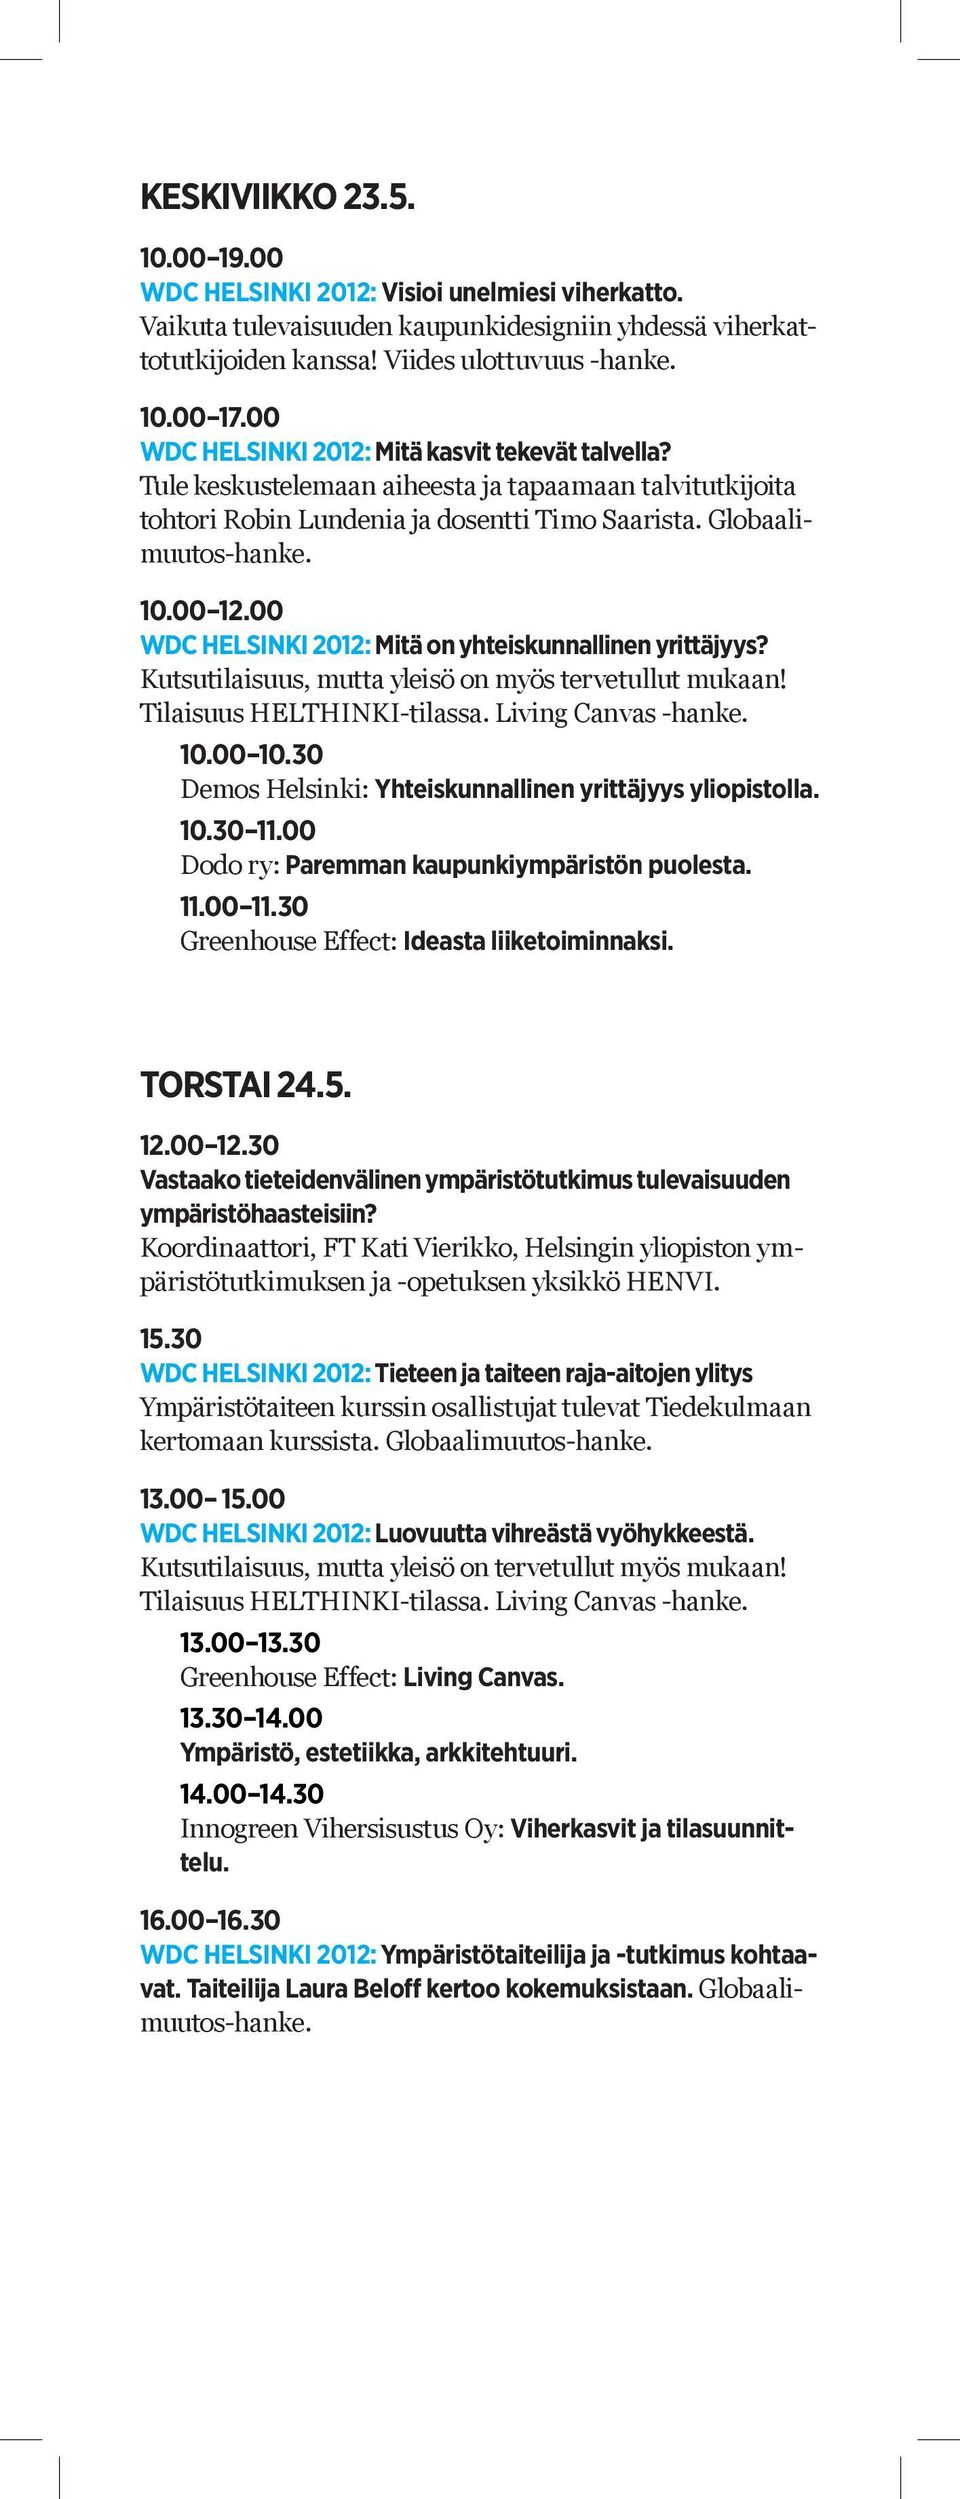 10.00 10.30 Demos Helsinki: Yhteiskunnallinen yrittäjyys yliopistolla. 10.30 11.00 Dodo ry: Paremman kaupunkiympäristön puolesta. 11.00 11.30 Greenhouse Effect: Ideasta liiketoiminnaksi. TORSTAI 24.5.